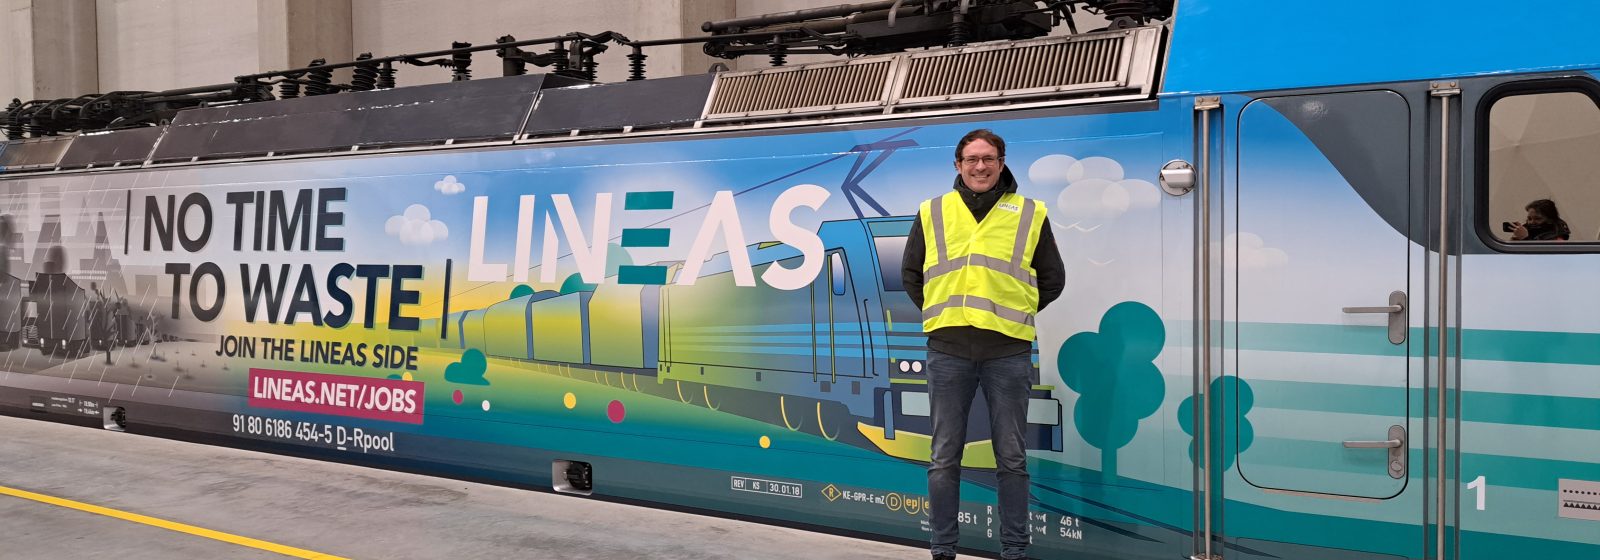 Ontwerper Pieter Vanraefelghem voor de Sustainability Locomotief van Lineas